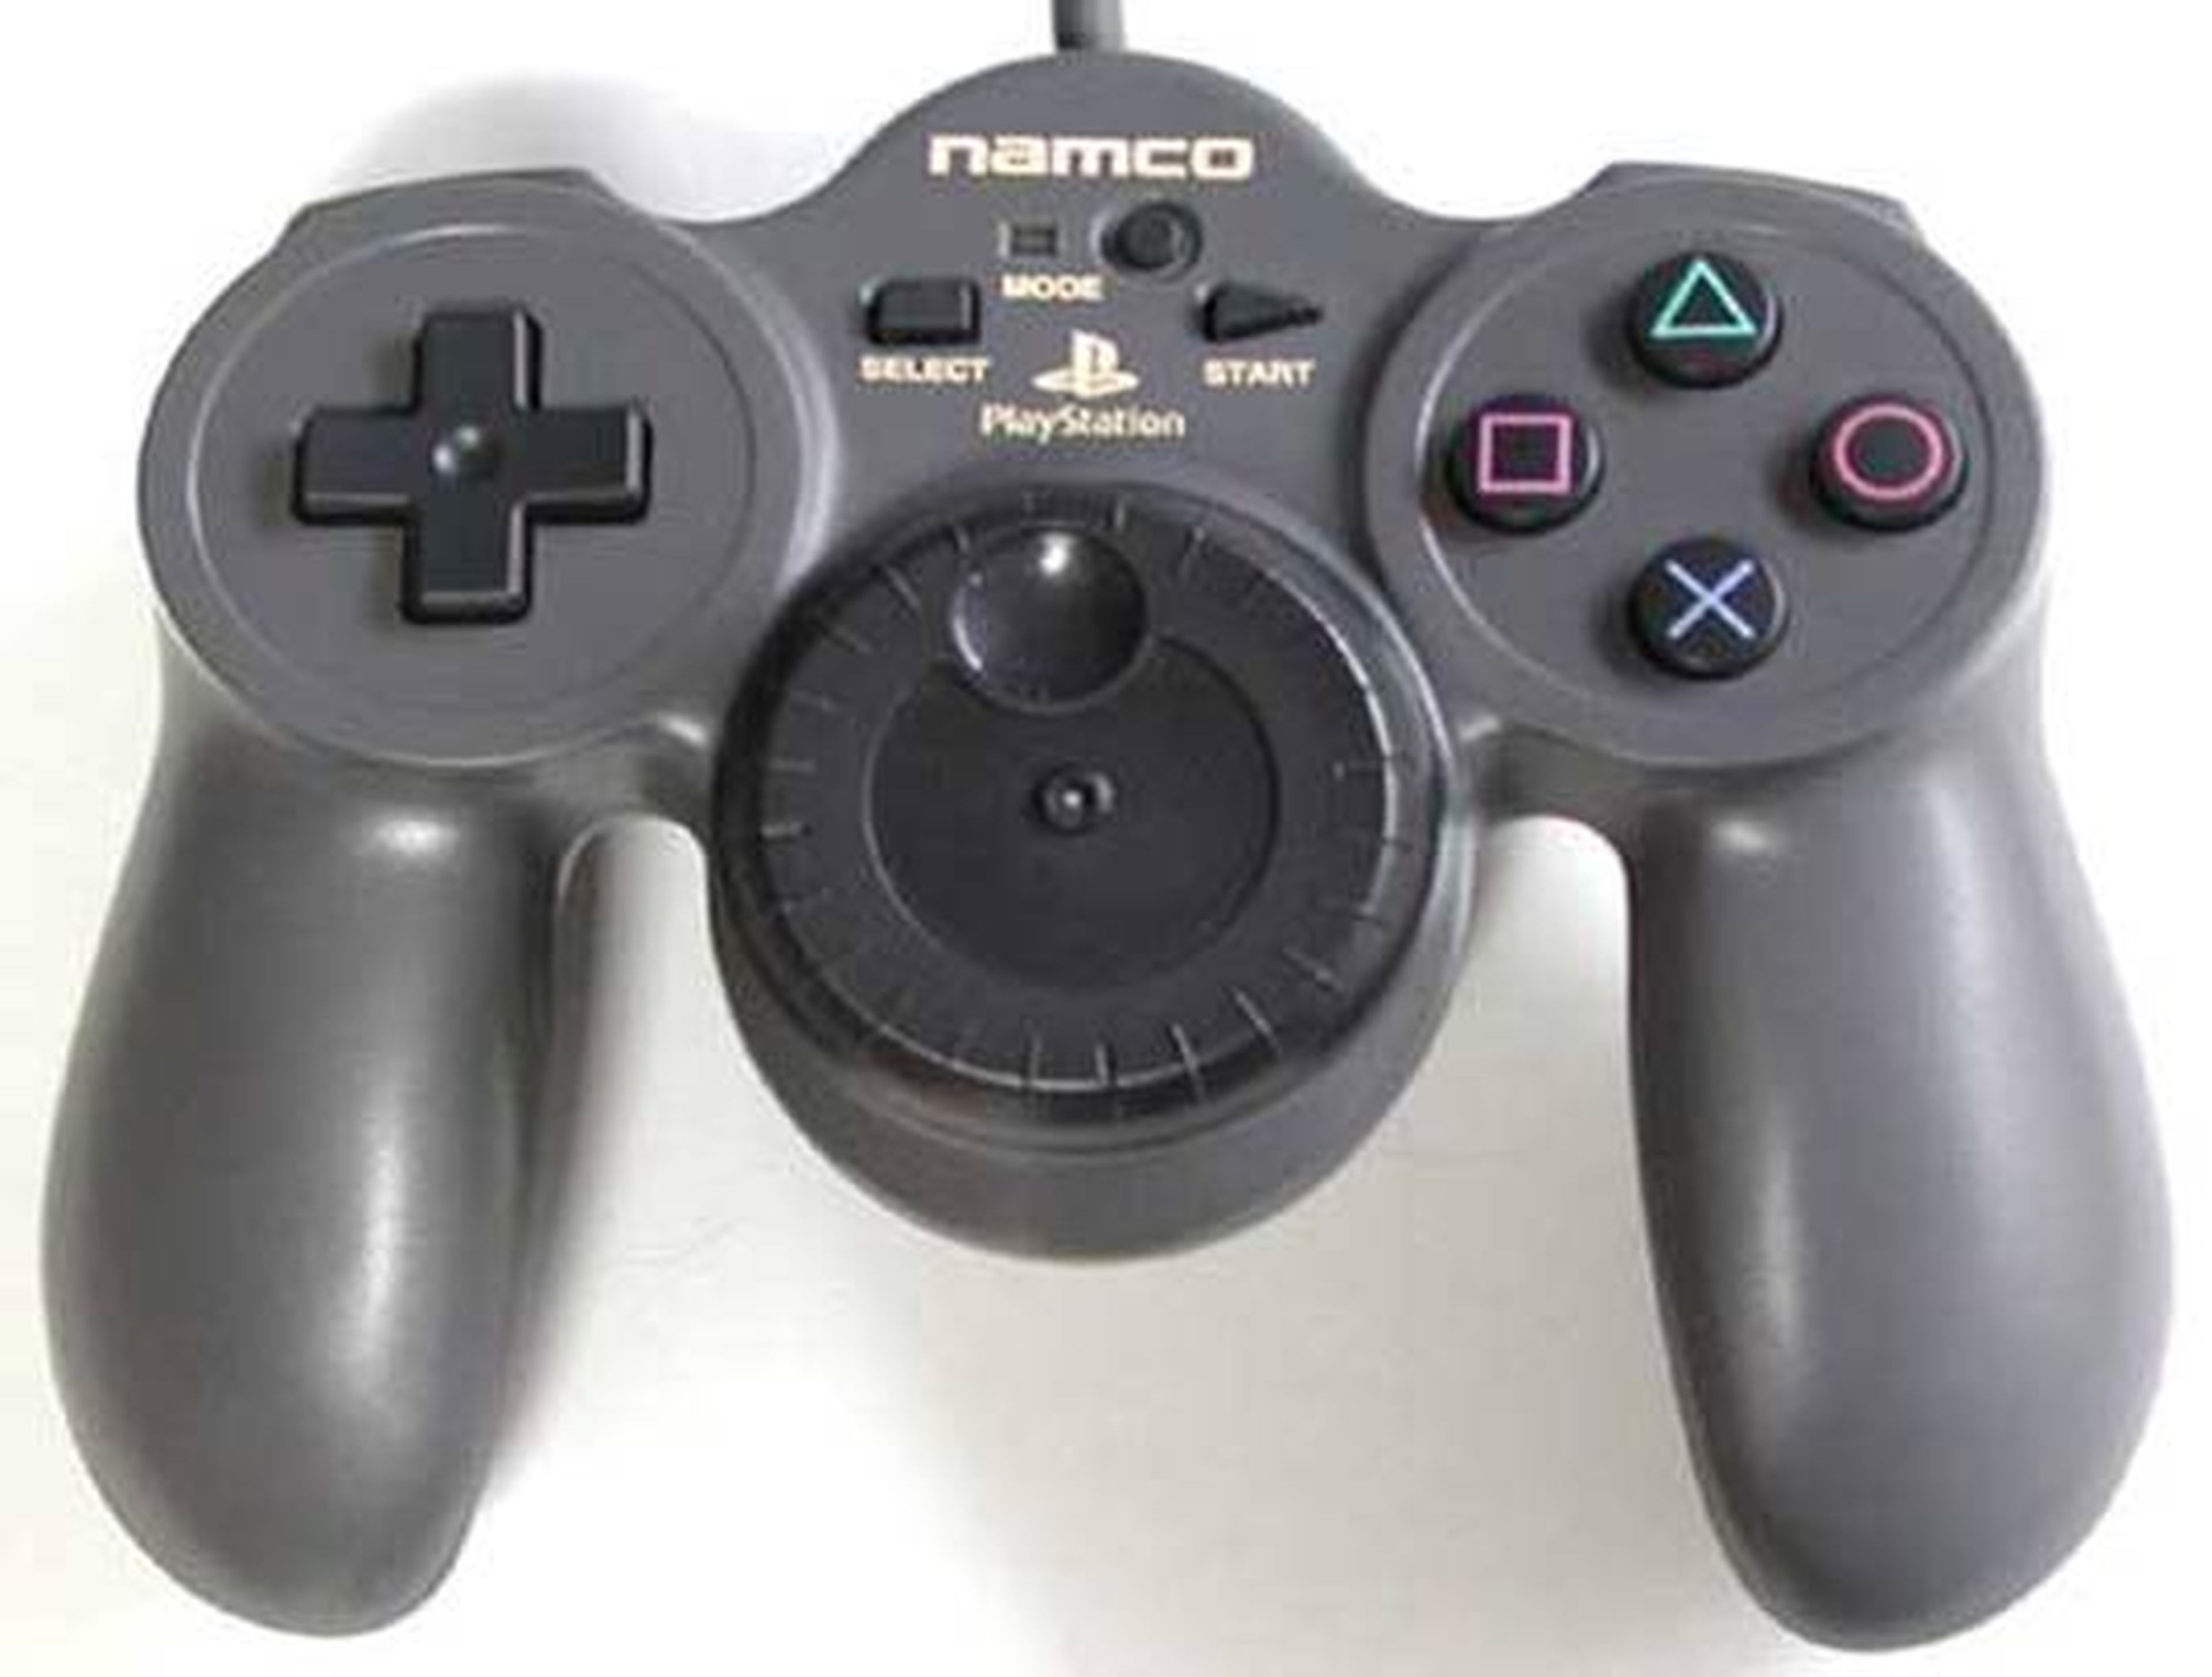 Historia de los mandos de PlayStation